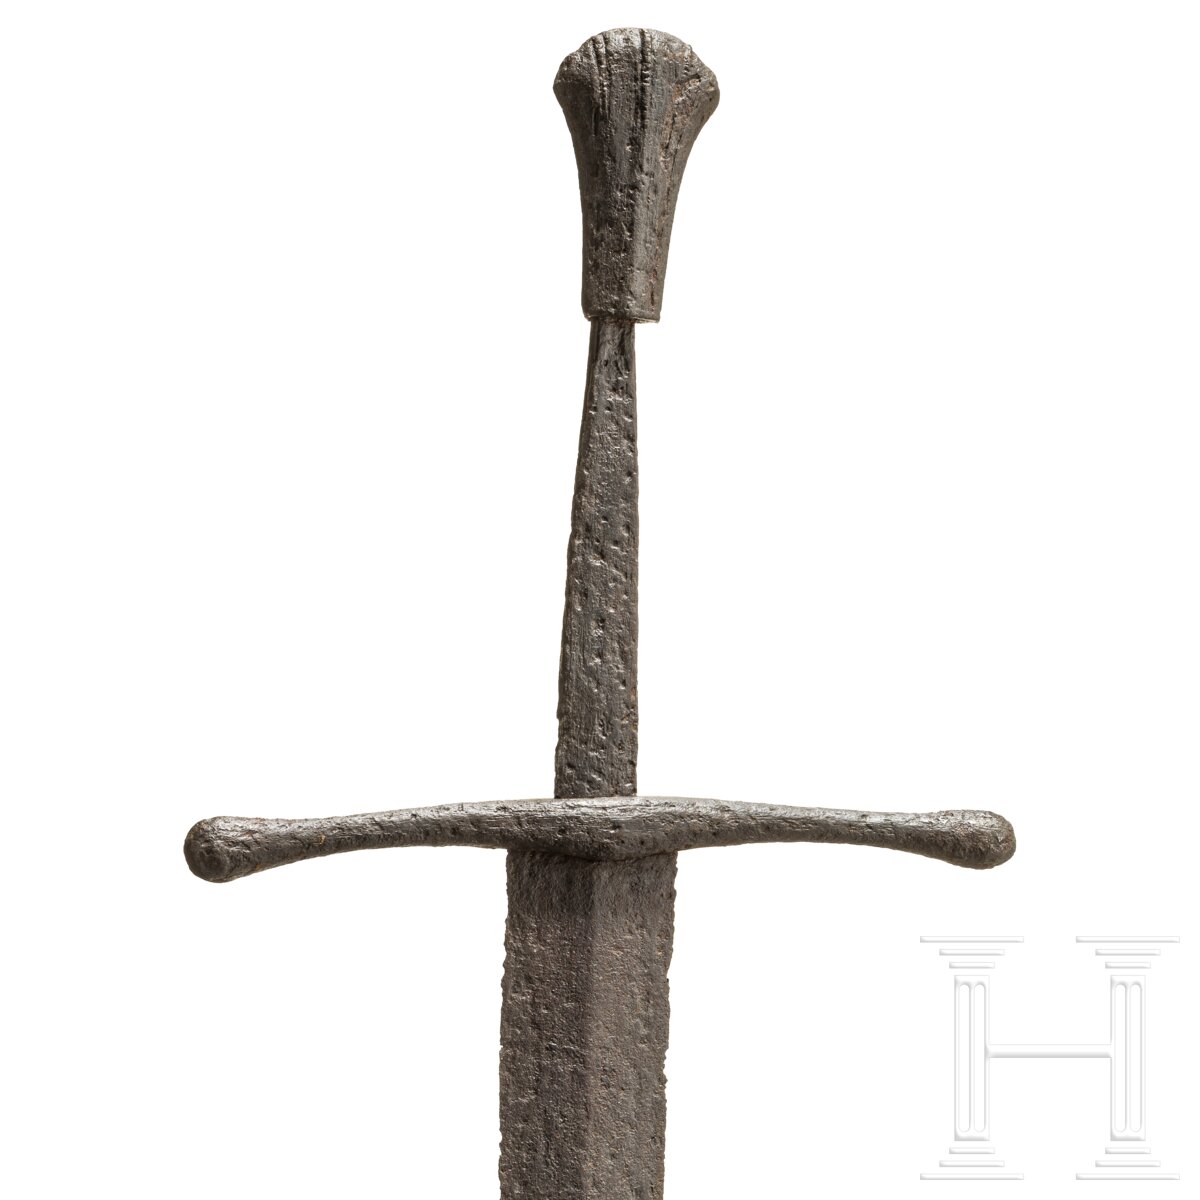 Ritterliches Schwert zu anderthalb Hand, Frankreich, um 1440/50 - Image 7 of 9